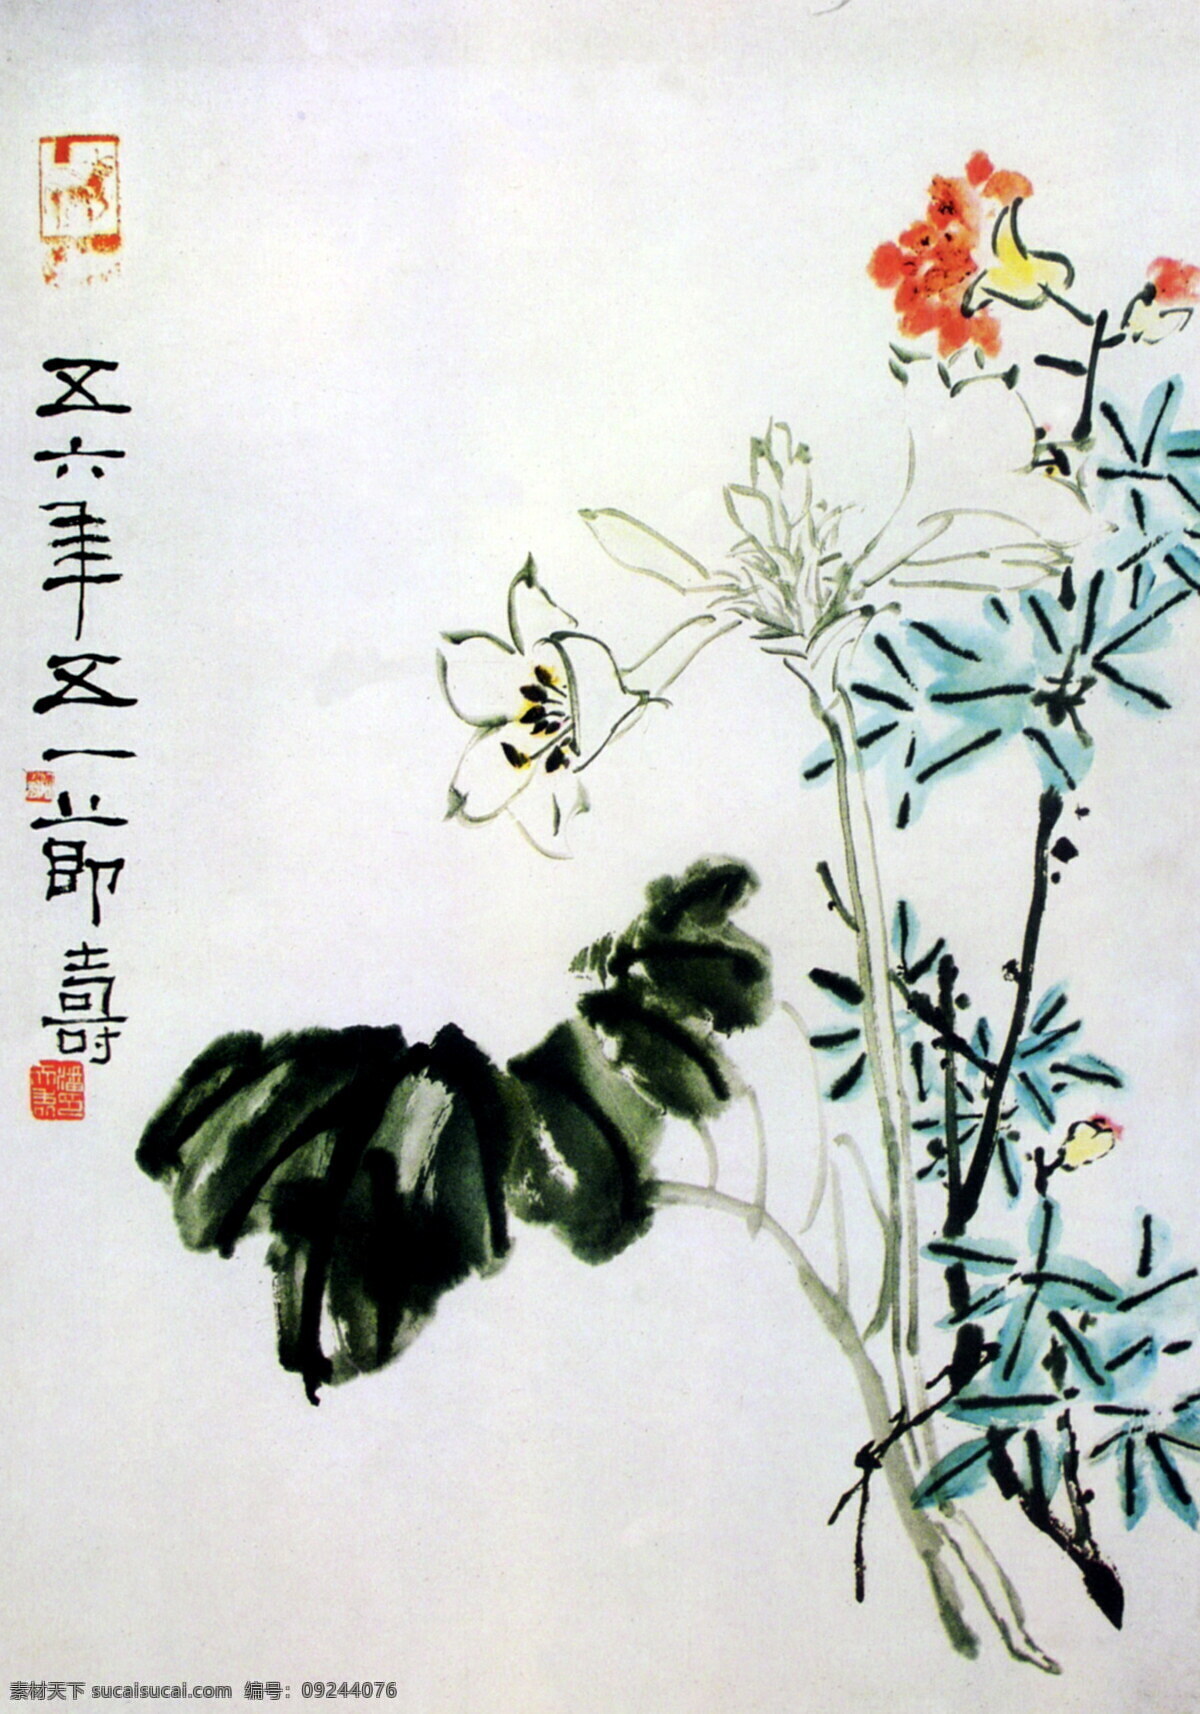 谈彩花卉 潘天寿 国画 传统画 名画 古画 水墨画 设计素材 花鸟画篇 中国画篇 书画美术 白色